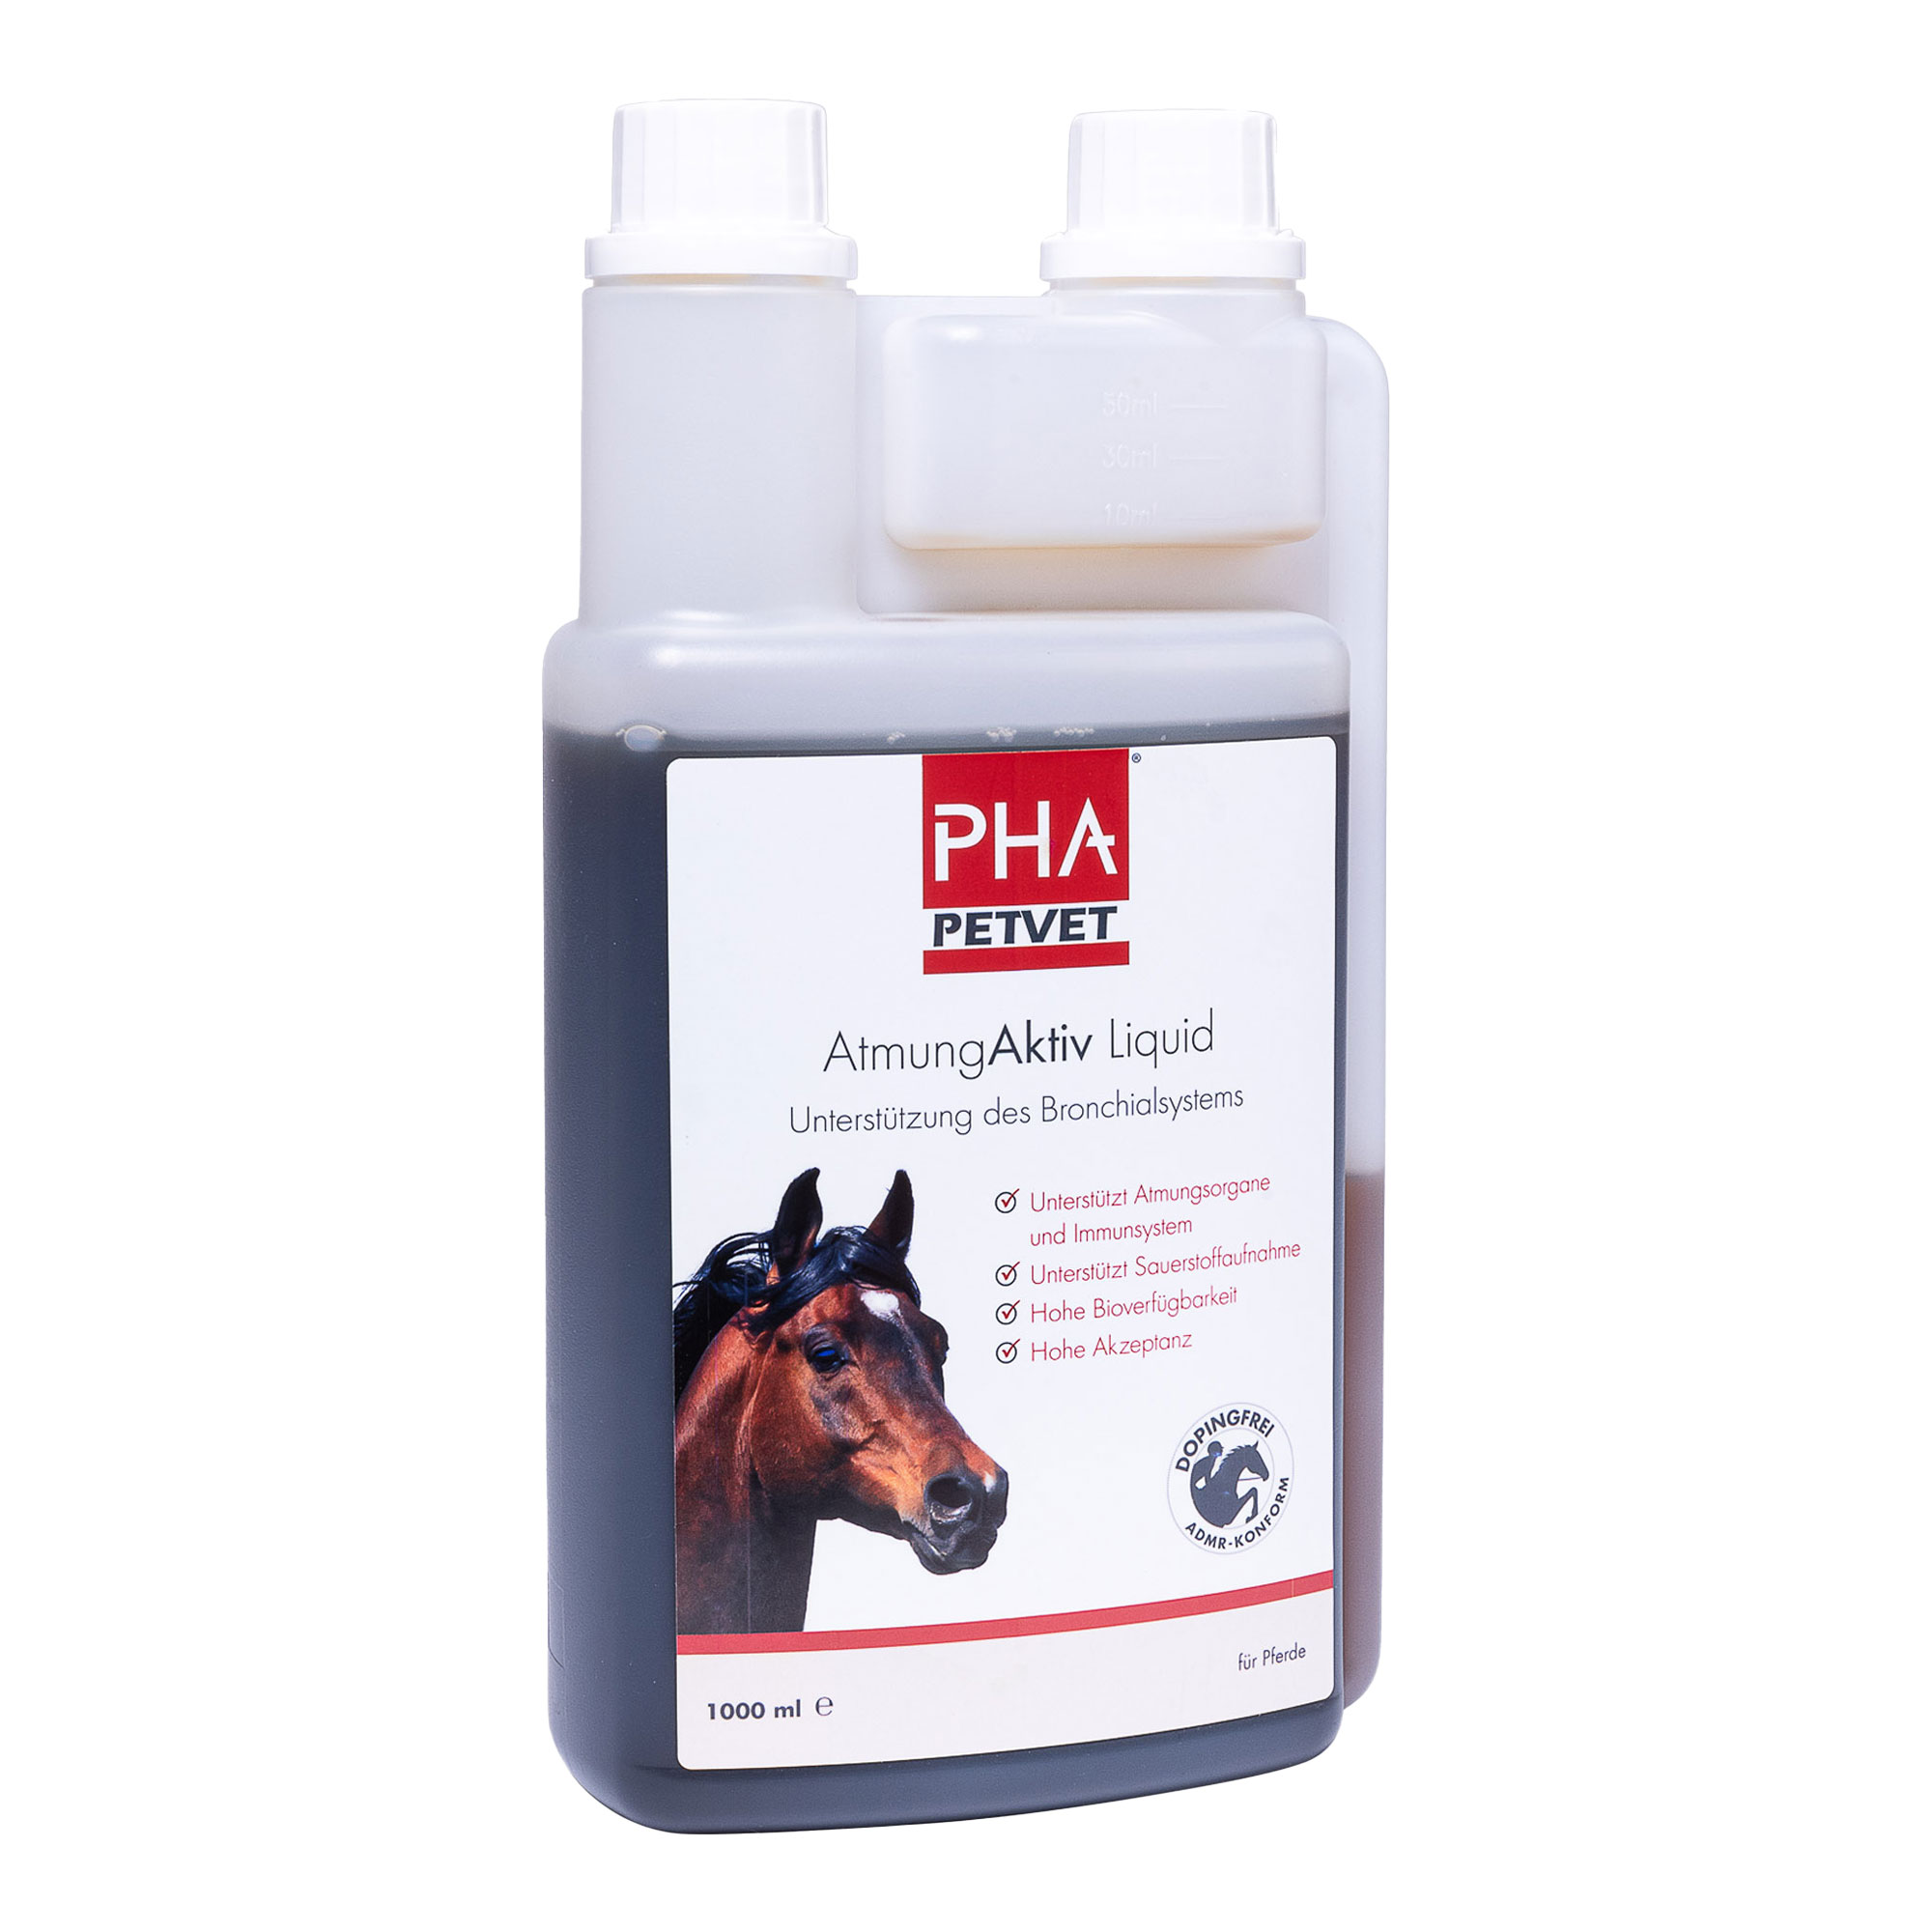 Flüssiges Ergänzungsfuttermittel für Pferde zur Unterstützung des Bronchialsystems.